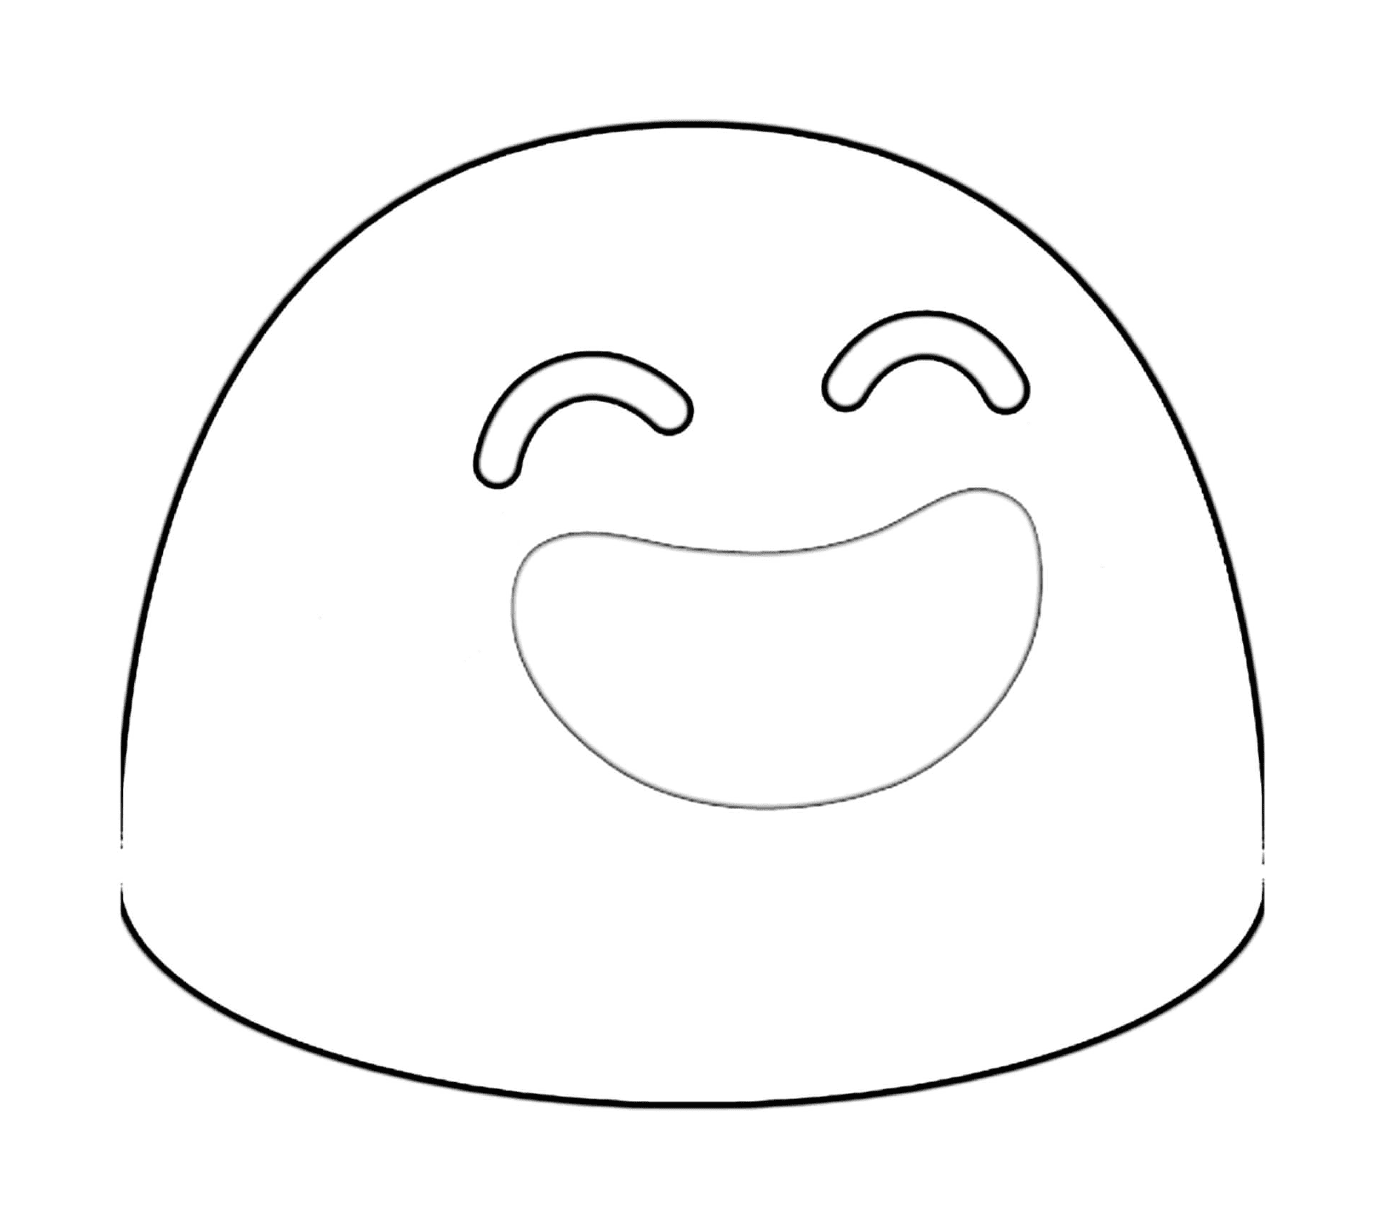  Un volto disegnato con un grande sorriso 